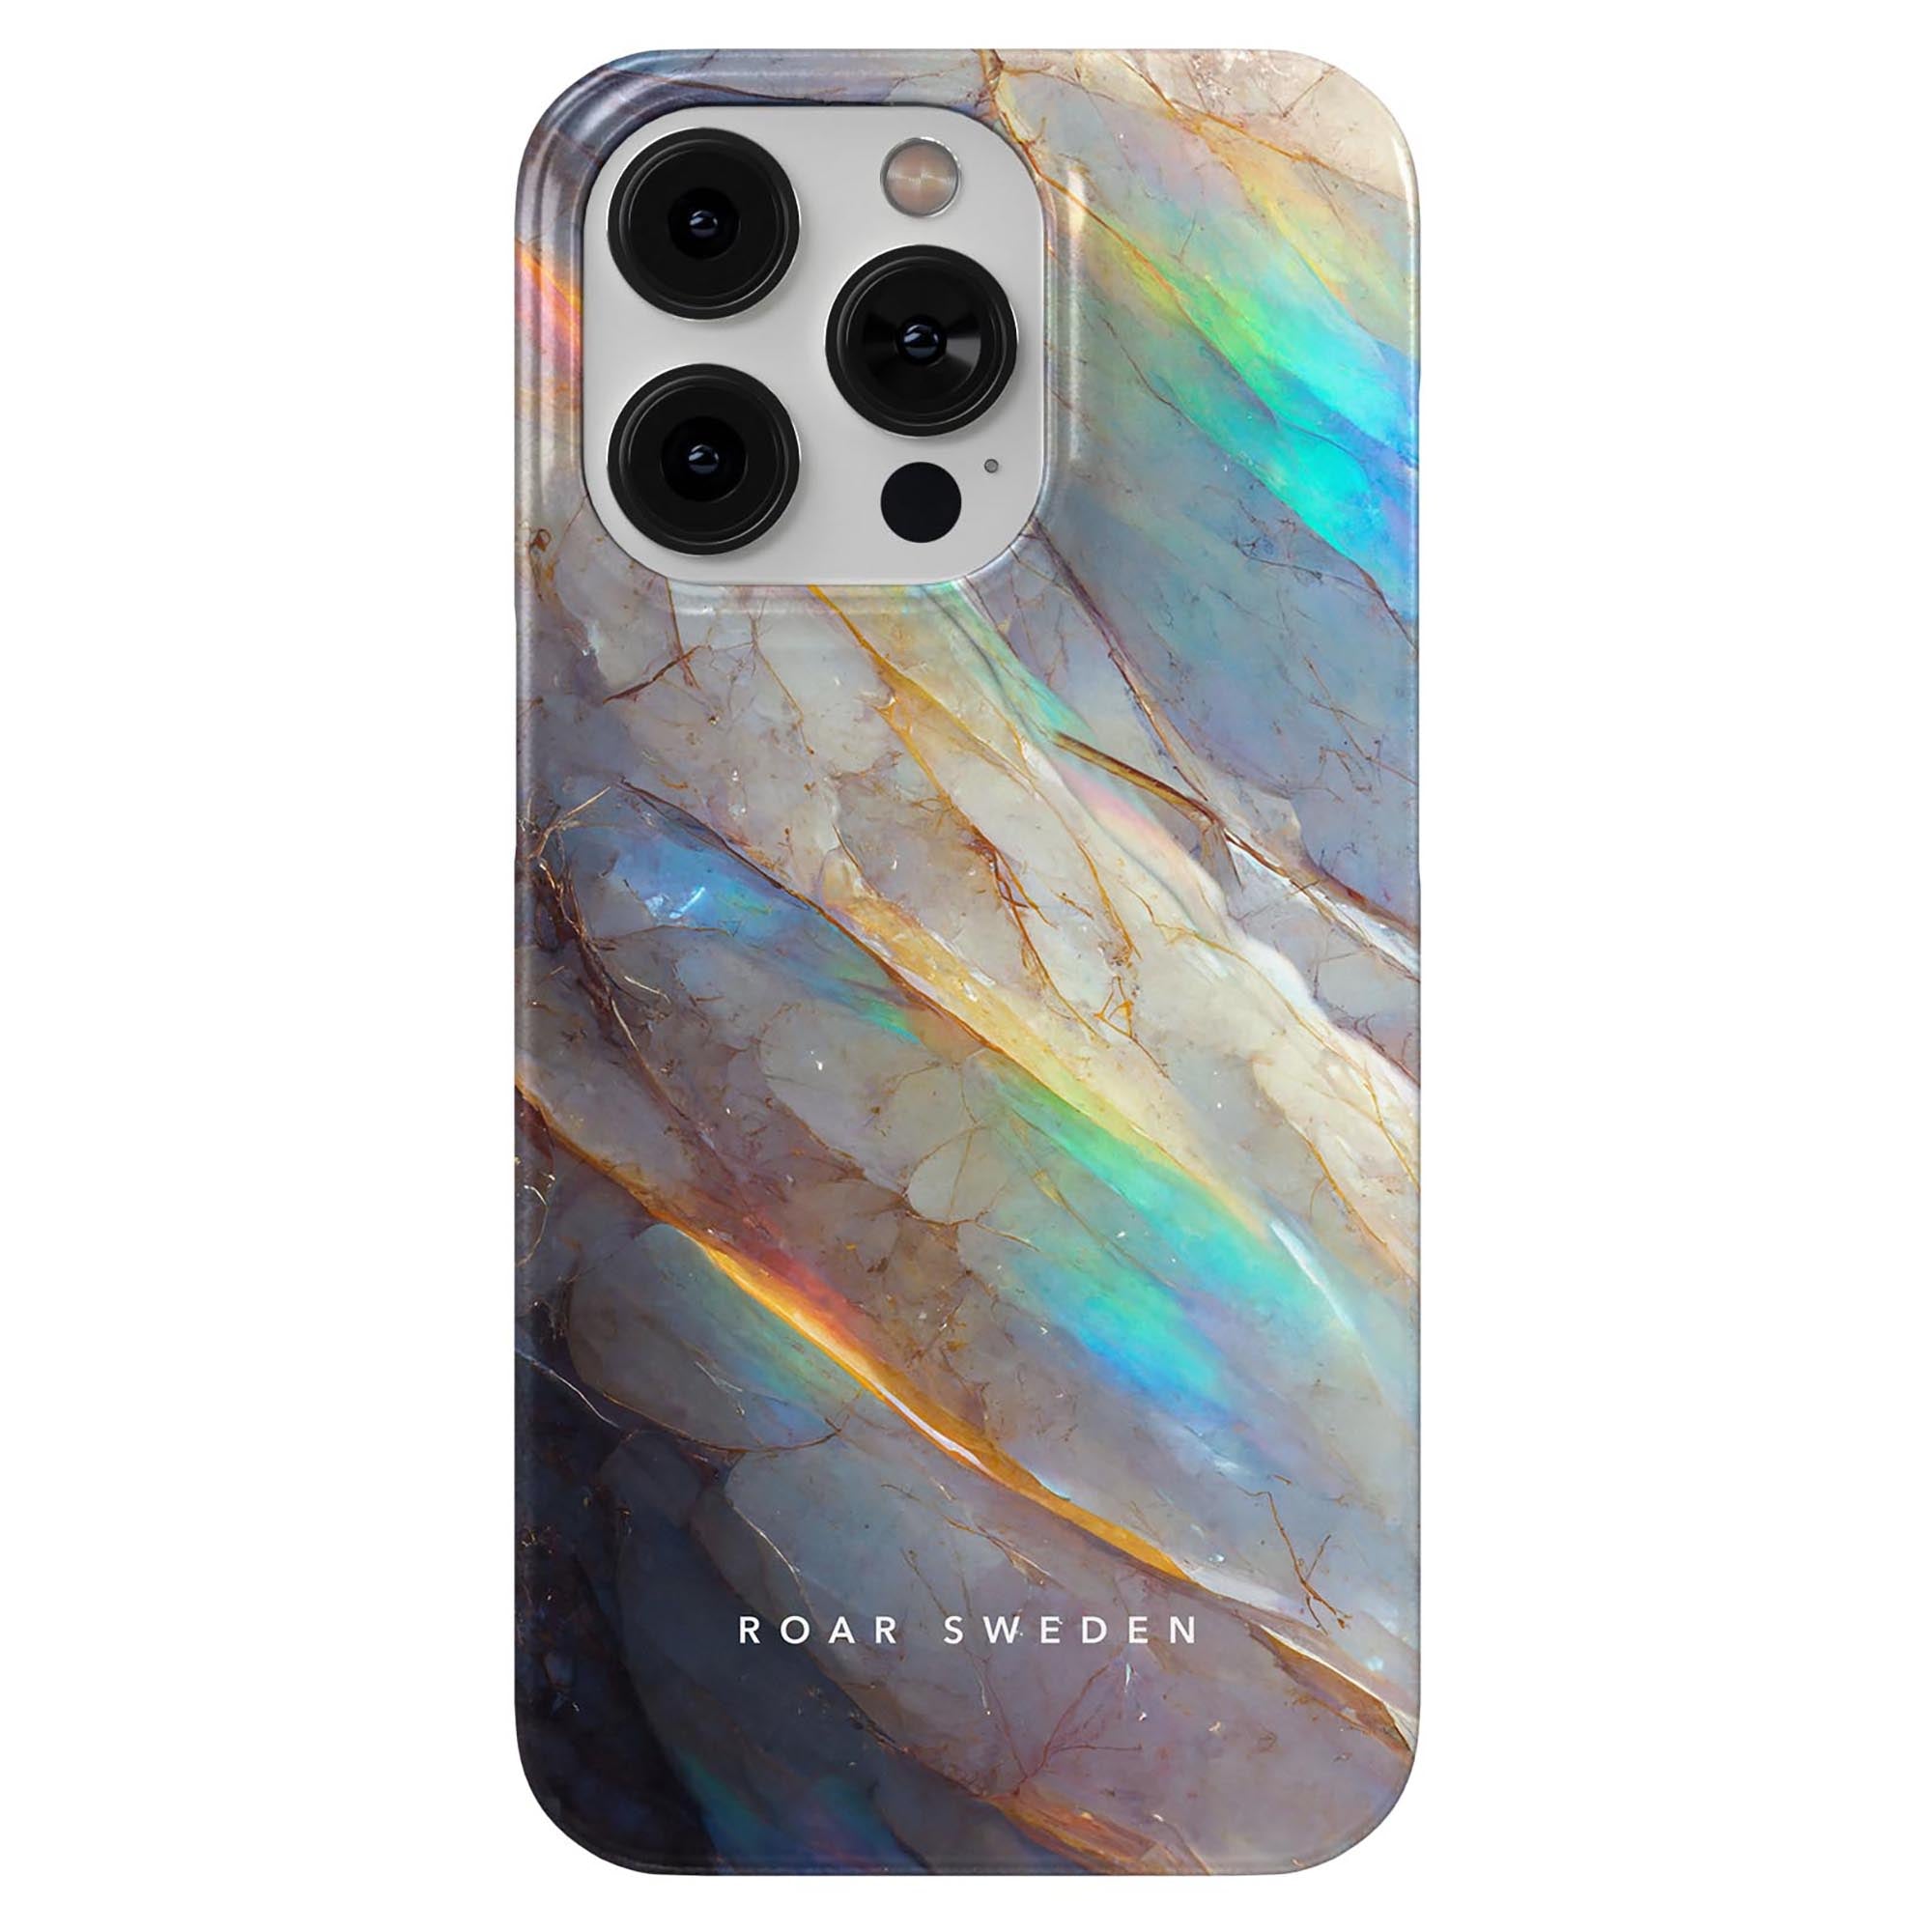 Ett kristall - smalt fodral för en mobiltelefon med en bild av en regnbågsfärgad marmor.